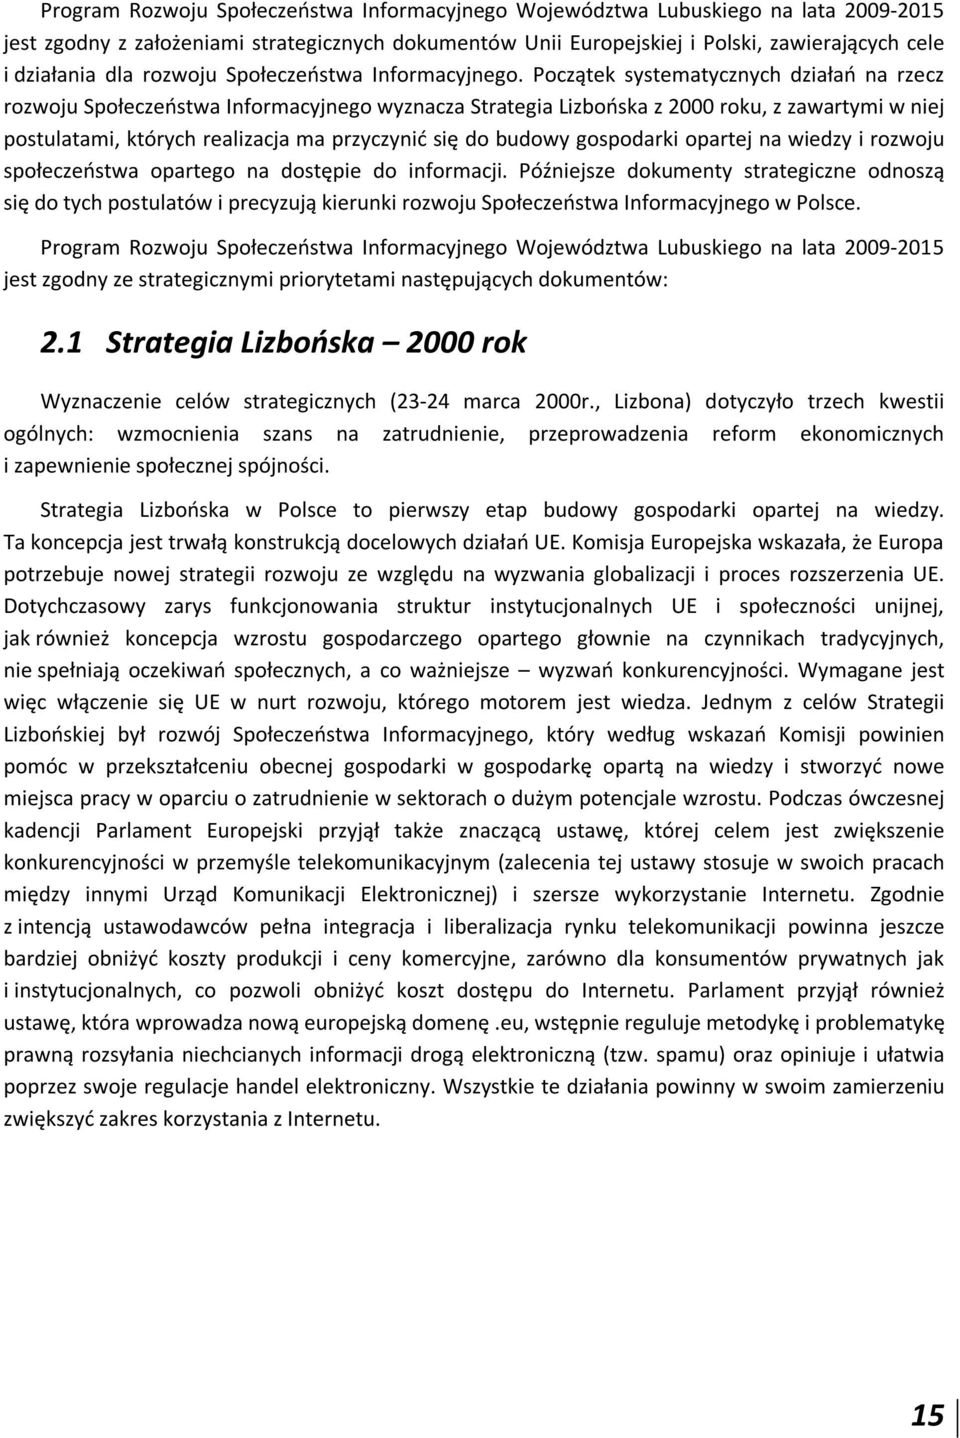 Początek systematycznych działań na rzecz rozwoju Społeczeństwa Informacyjnego wyznacza Strategia Lizbońska z 2000 roku, z zawartymi w niej postulatami, których realizacja ma przyczynić się do budowy